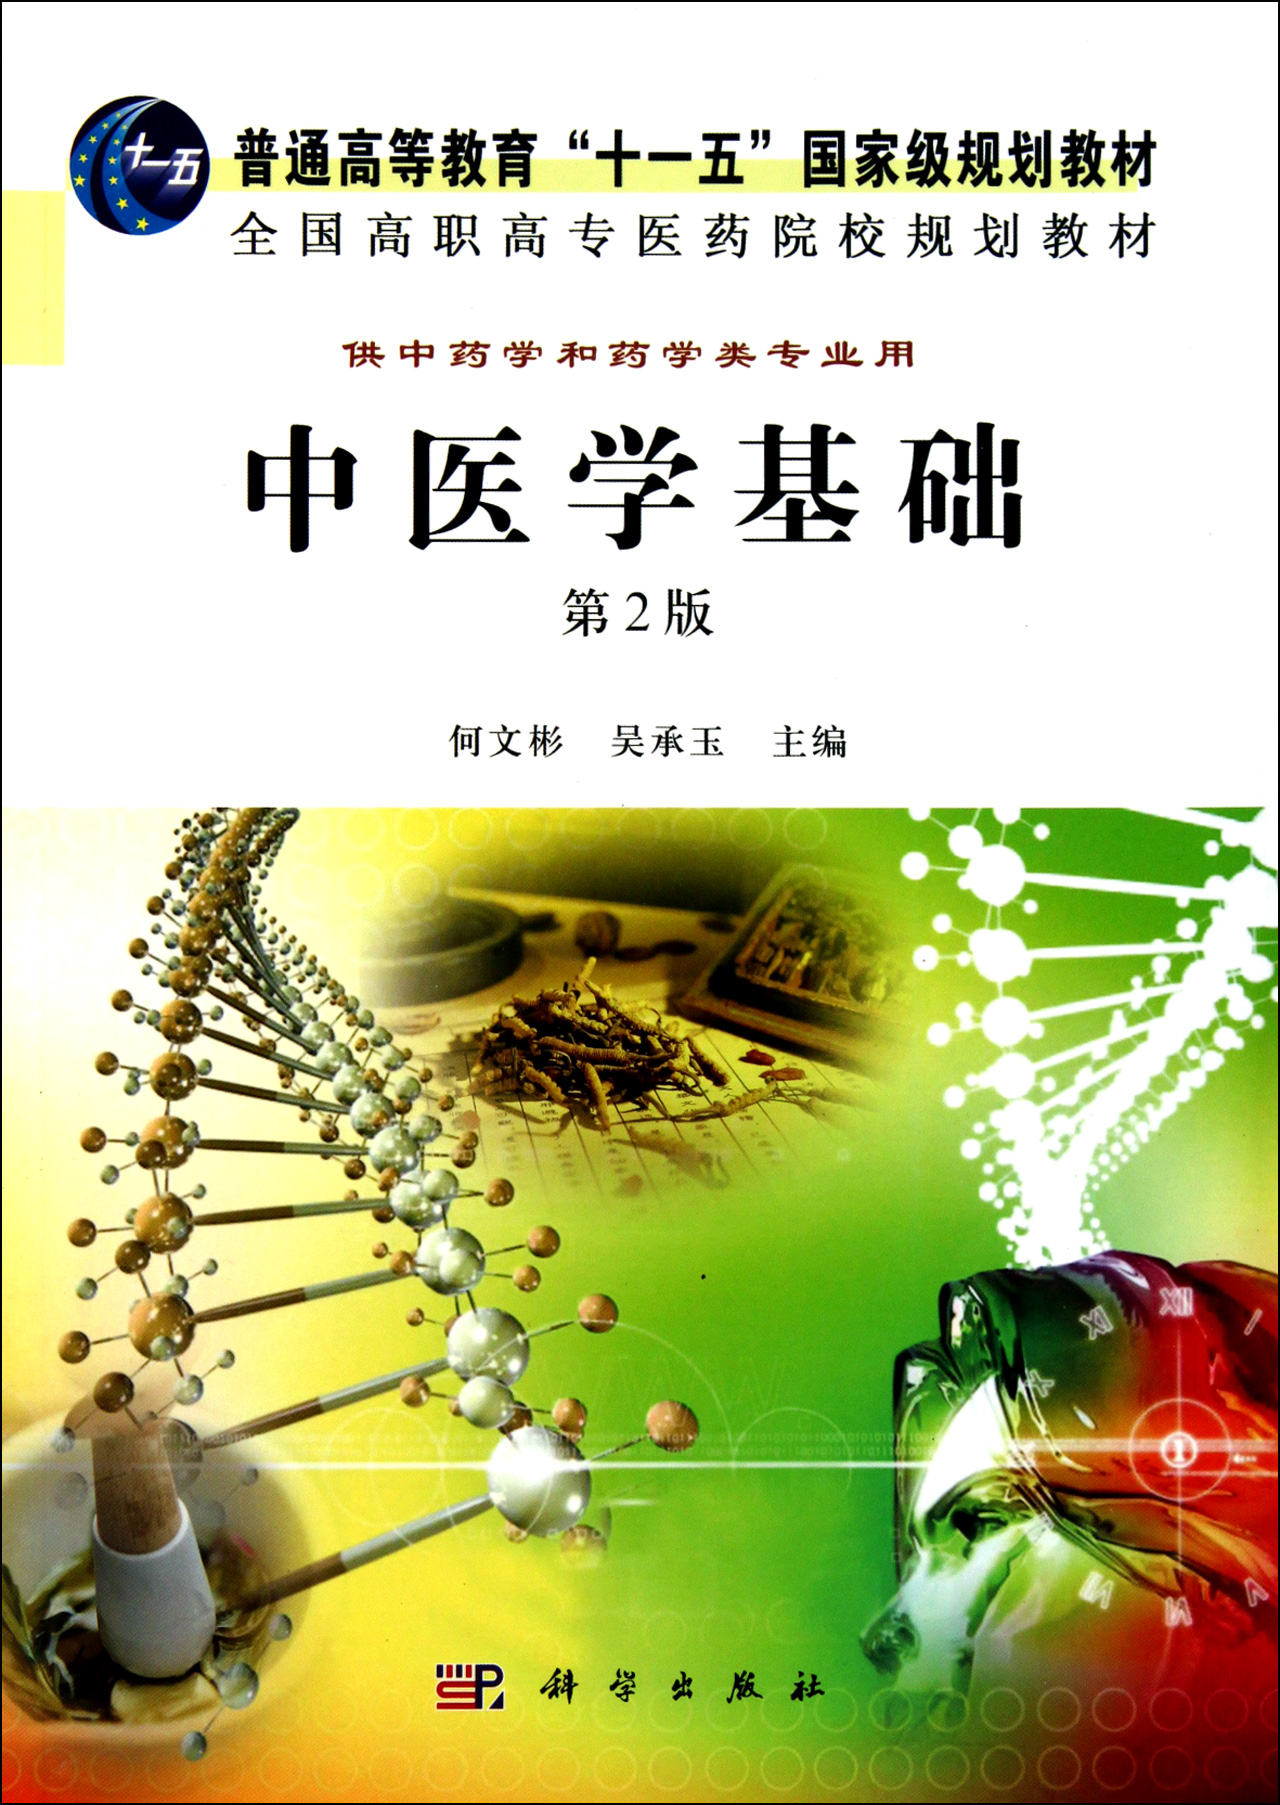 中医药学；传统文化；科学价值我国的中医价值